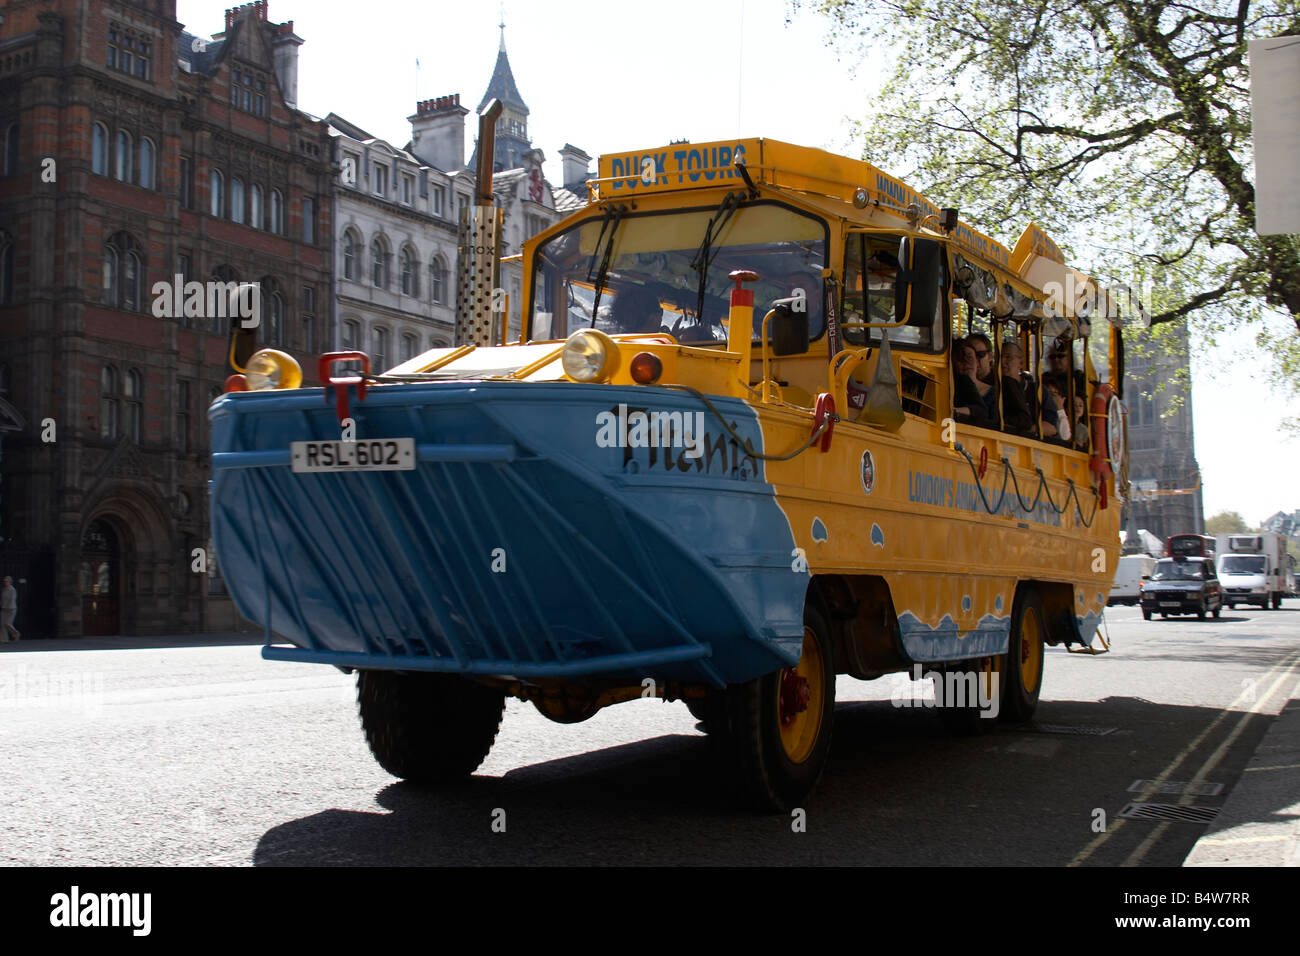 Duck Tours Original bateau bus amphibie sur Whitehall City of Westminster SW1 London England Banque D'Images